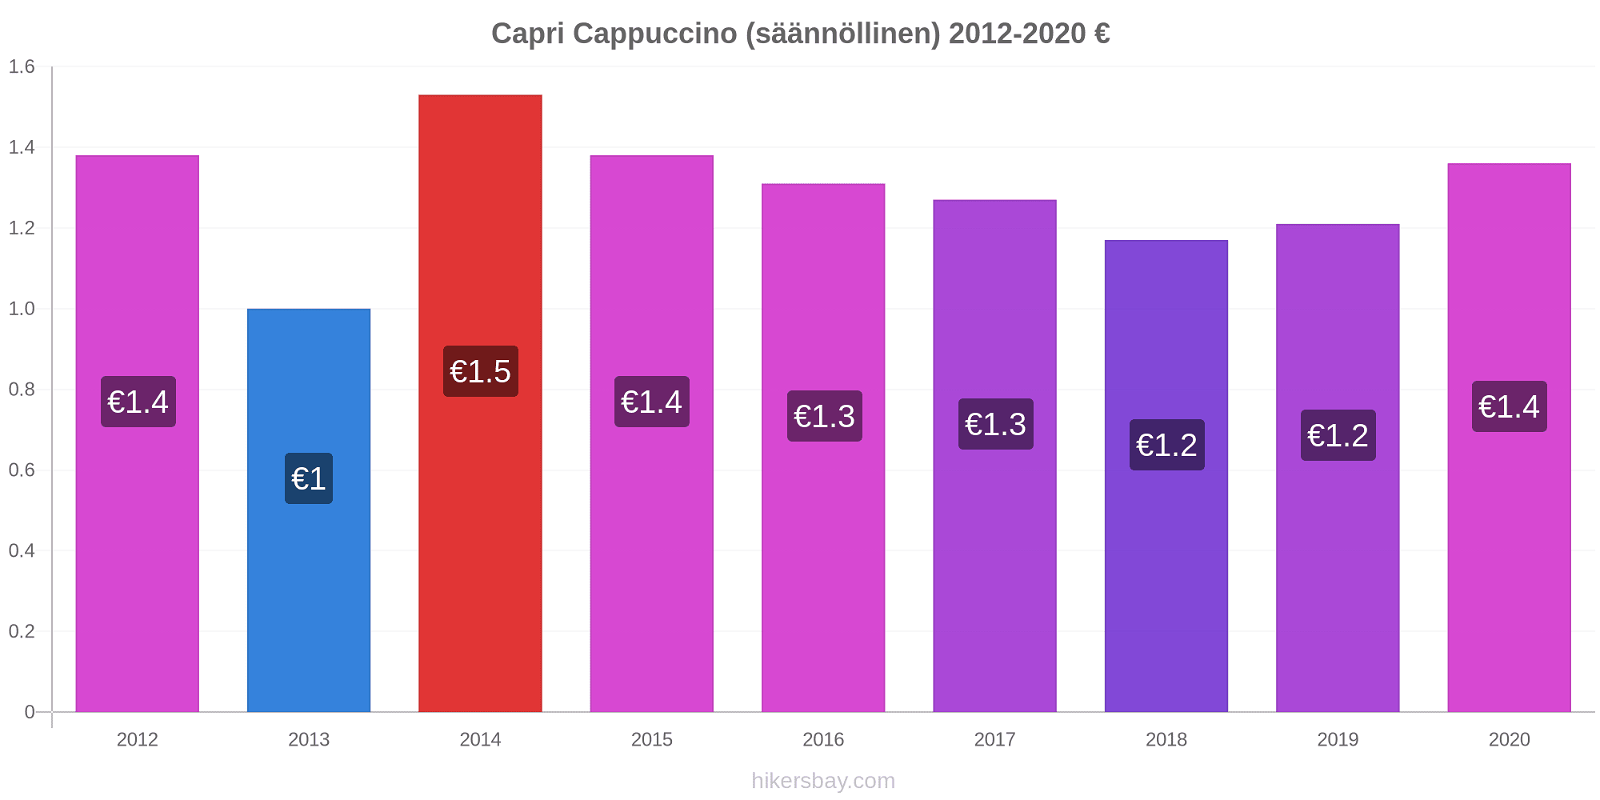 Capri hintojen muutokset Cappuccino (säännöllinen) hikersbay.com